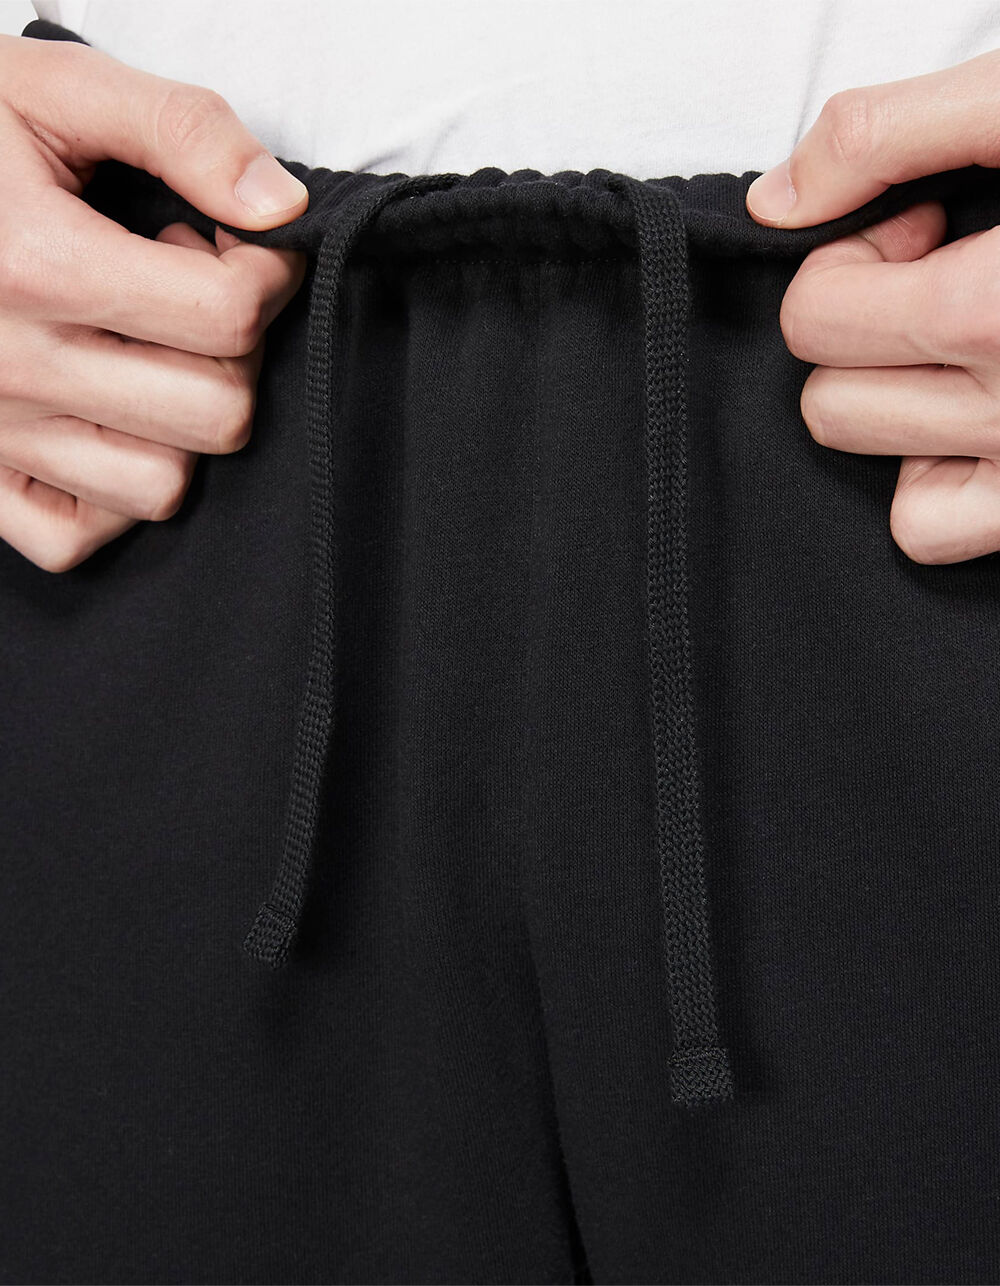 NIKE Sportswear Club Fleece Mens Sweatpants - BLACK | Tillys